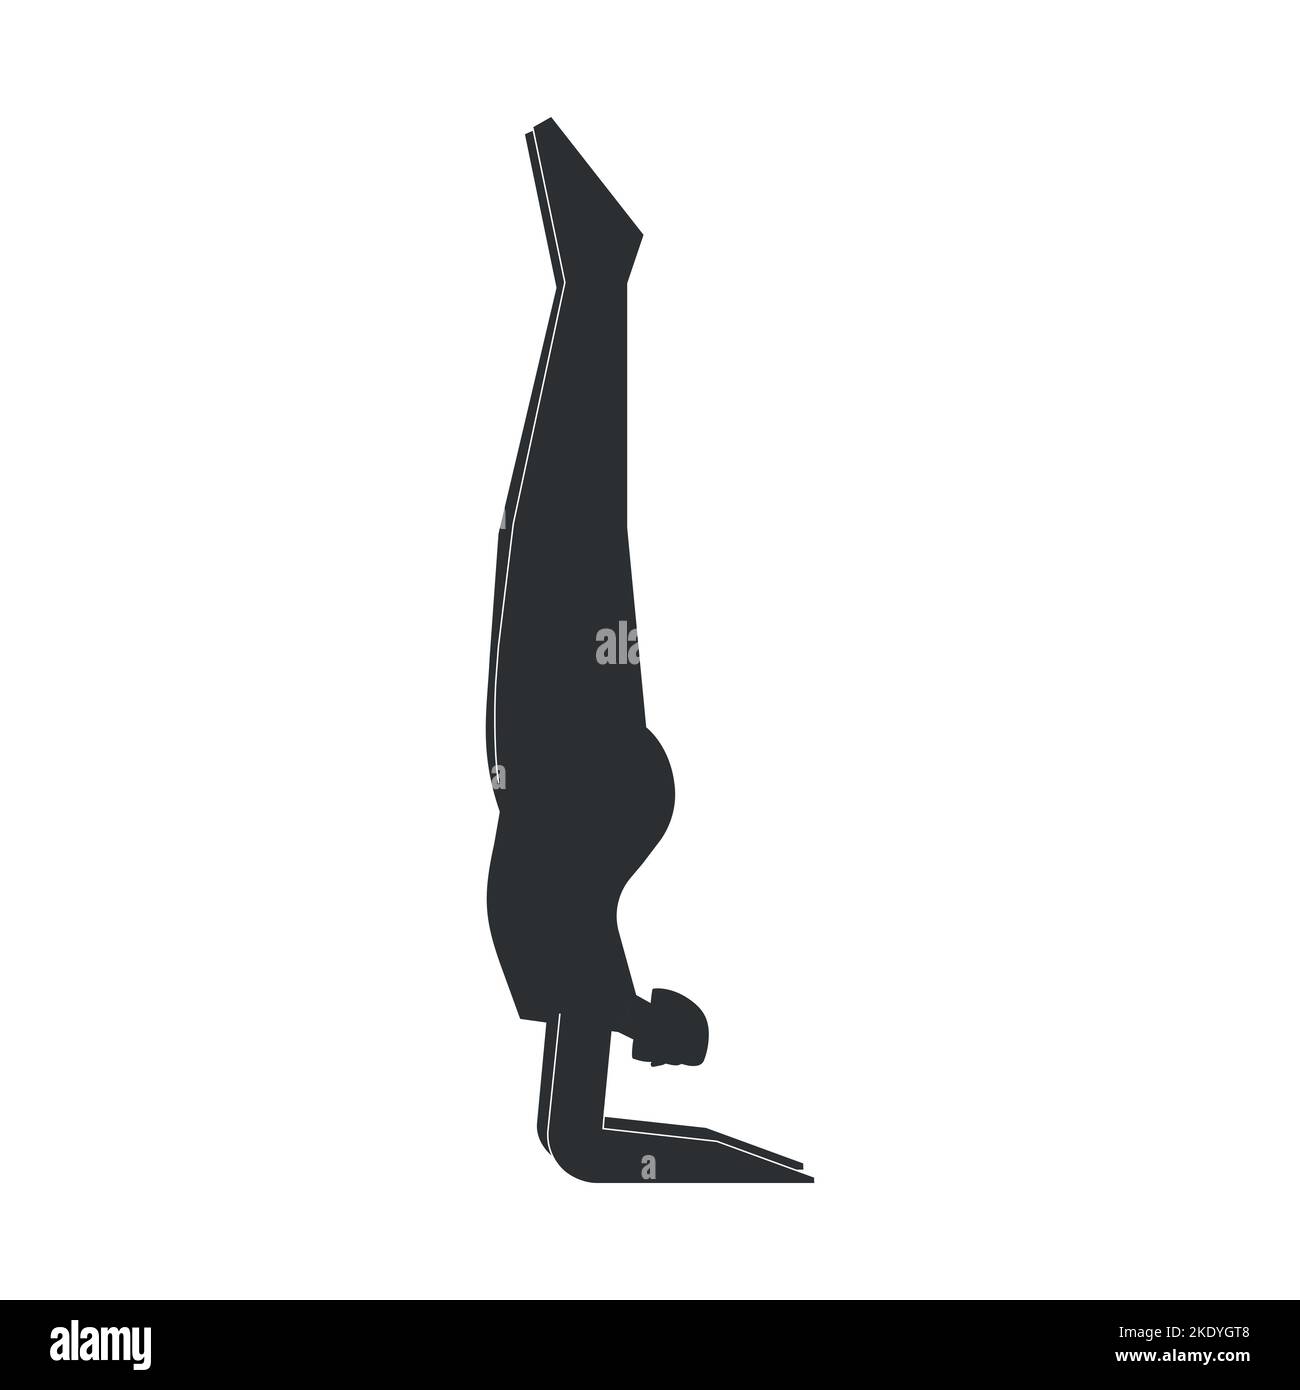 Vektor isolierte Illustration mit flacher schwarzer Silhouette des weiblichen Charakters. Die sportliche Frau lernt die Yoga-Haltung. Fitness-Übung - Unterarm stehen Pose Stock Vektor